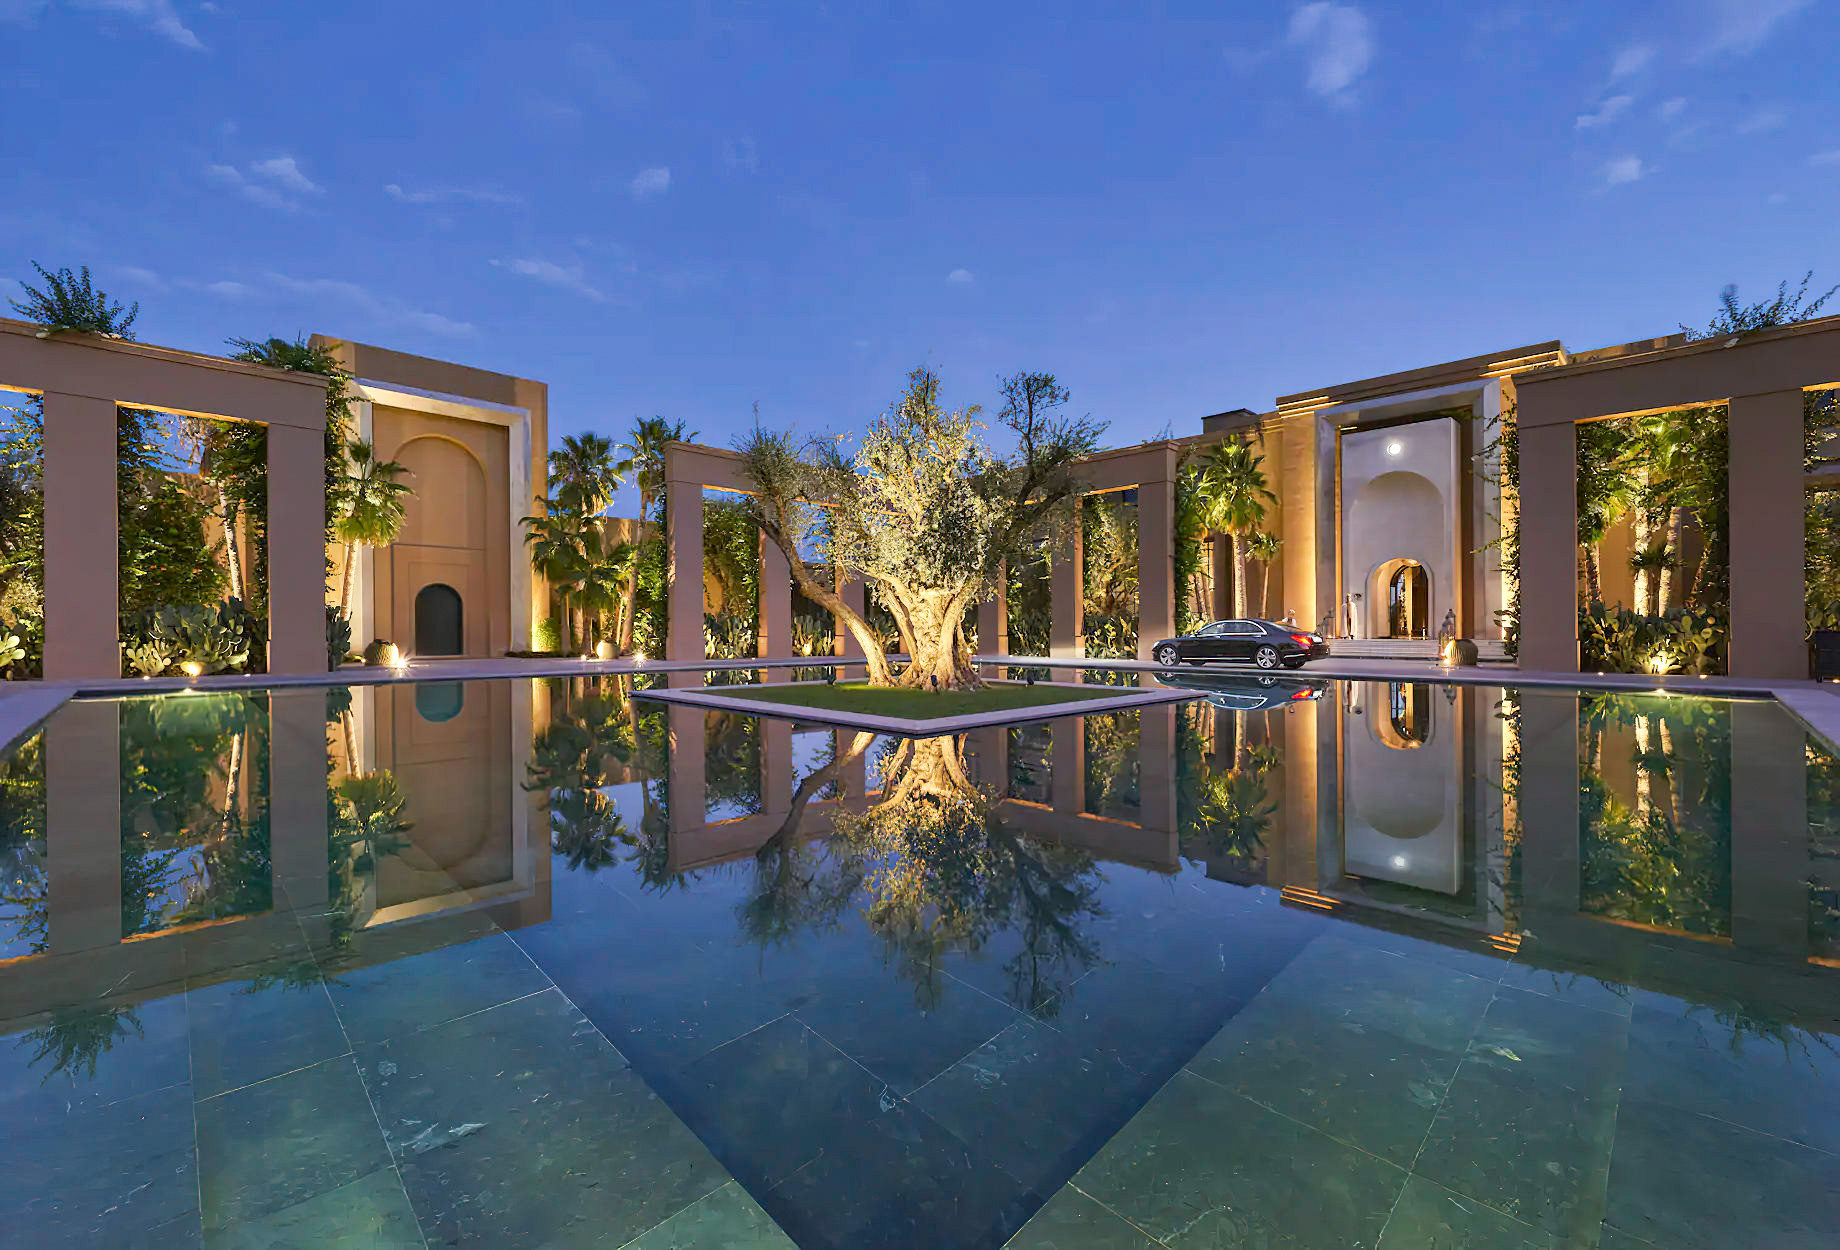 Mandarin Oriental, Marrakech Hotel – Marrakech, Morocco – Arrival